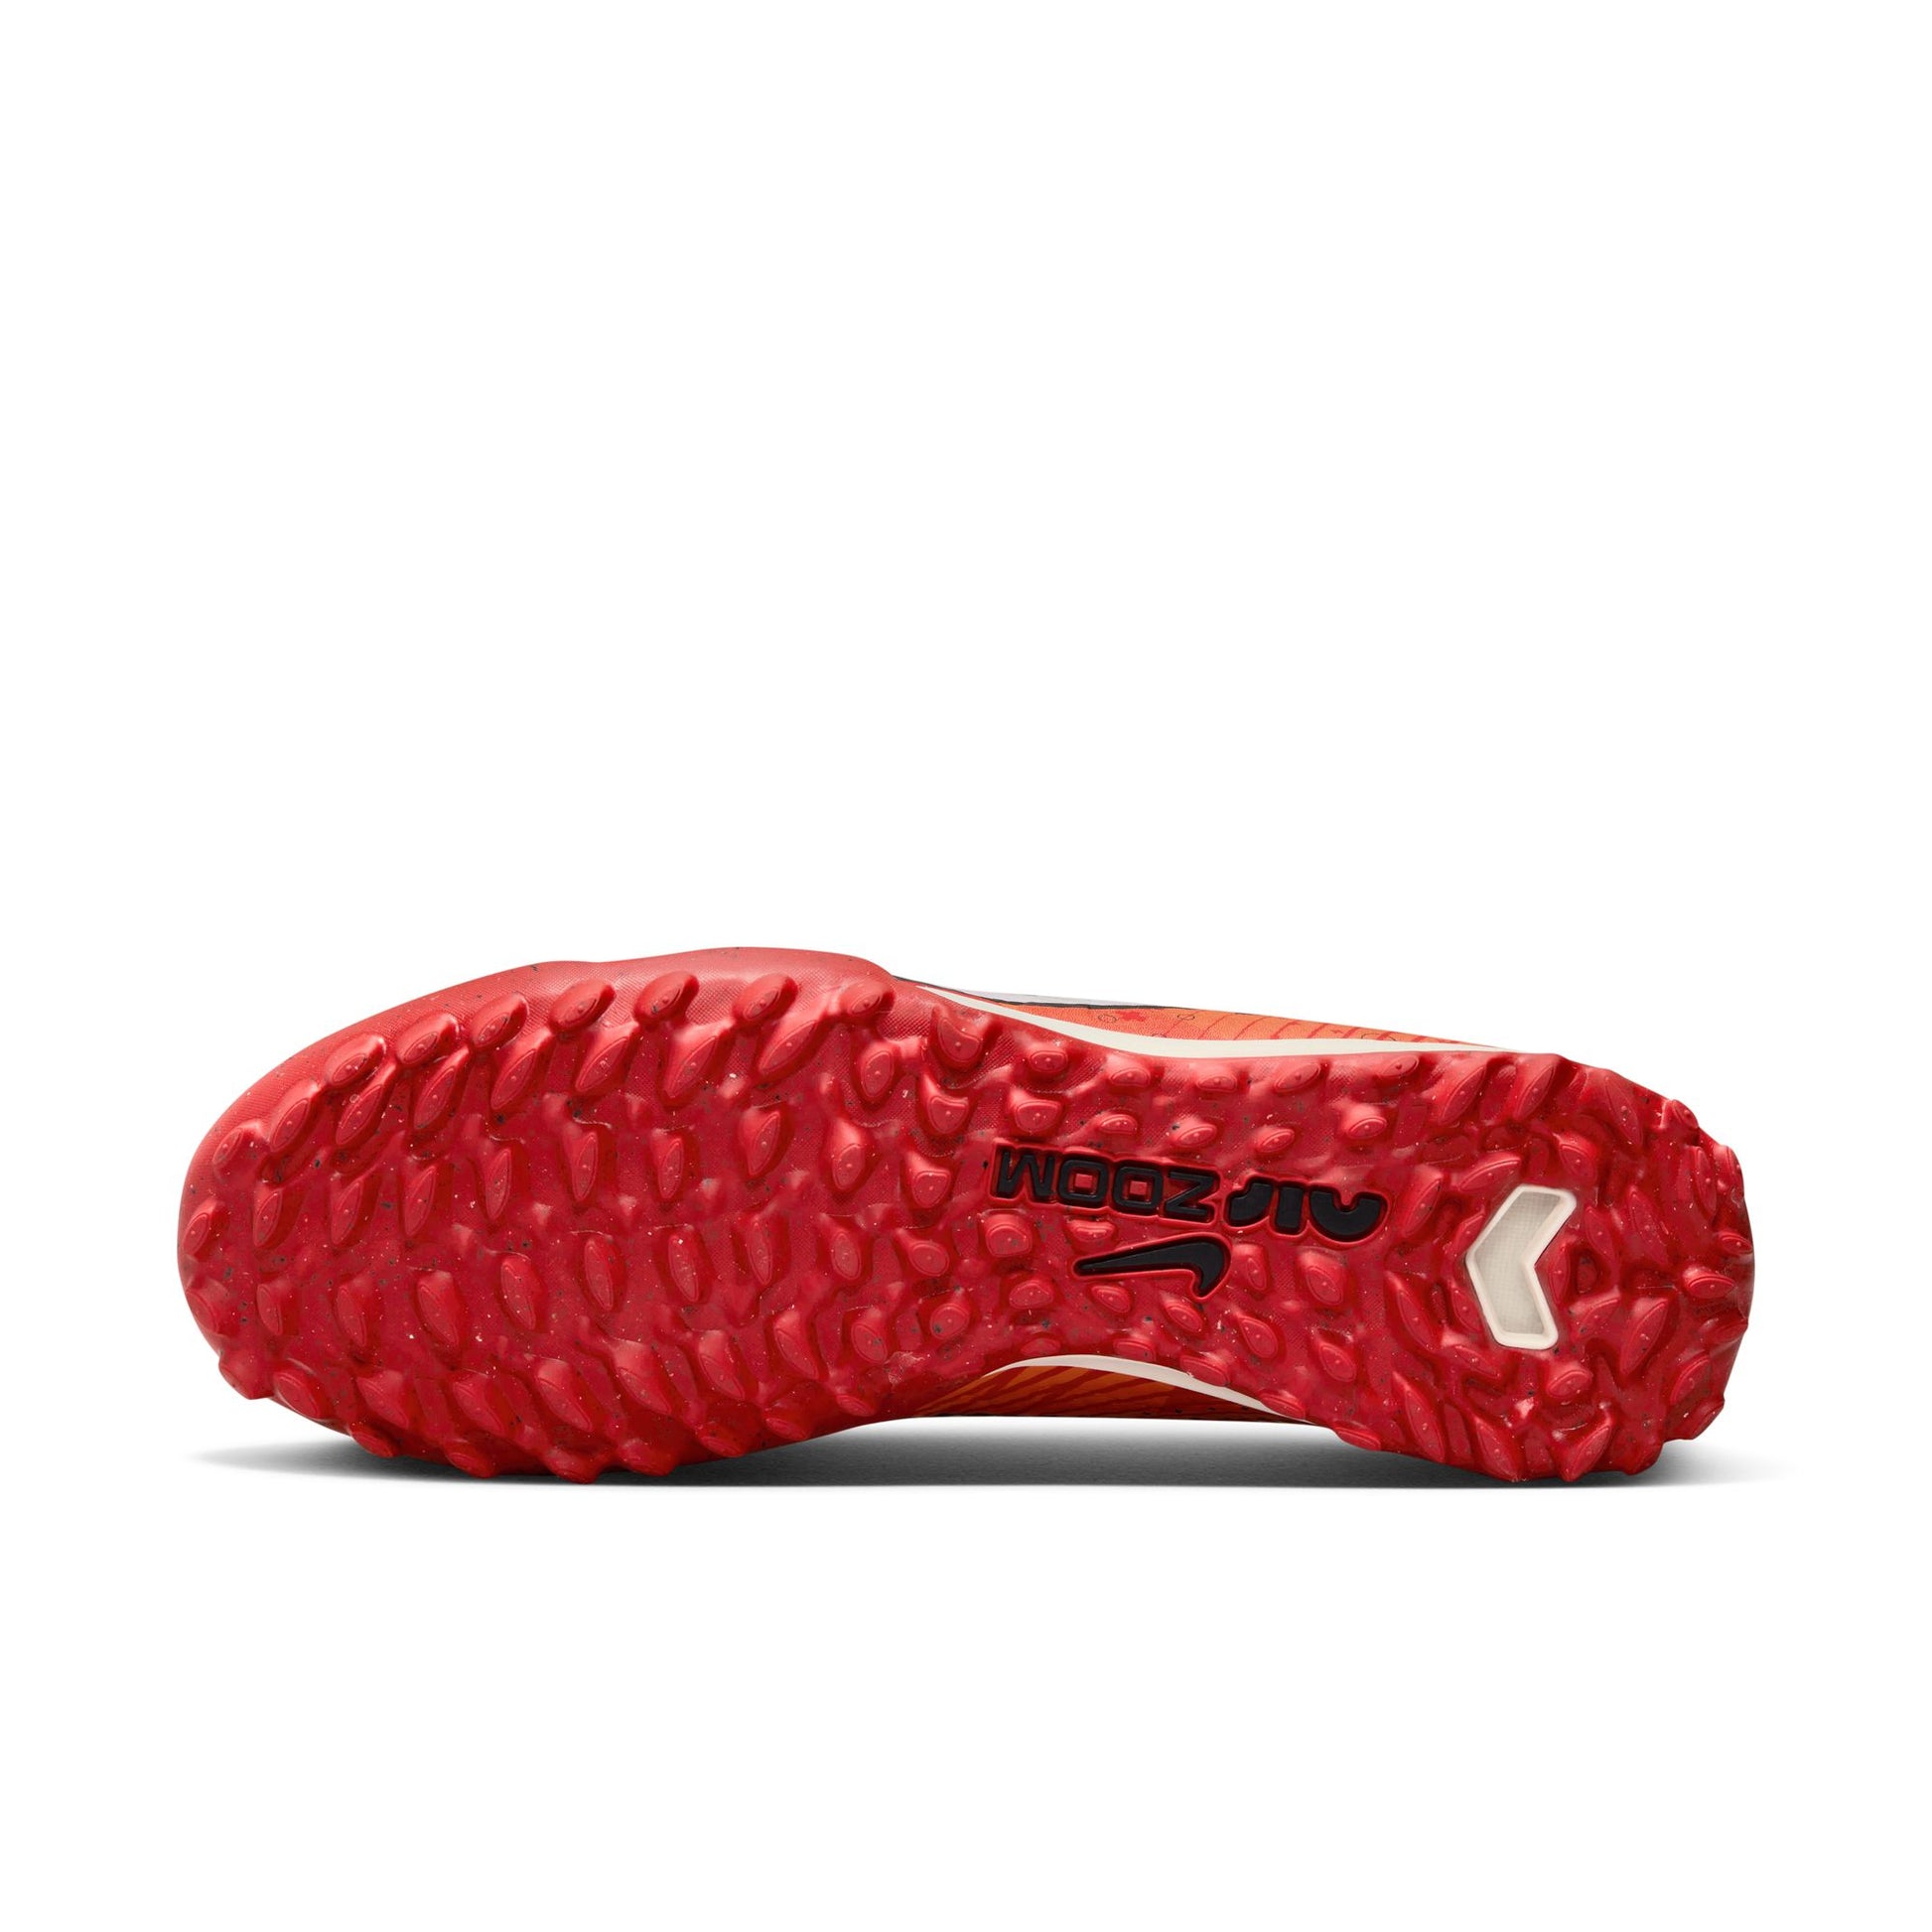 נעלי קטרגל לגברים Vapor 15 Academy Mercurial Dream Speed בצבע כתום ואדום